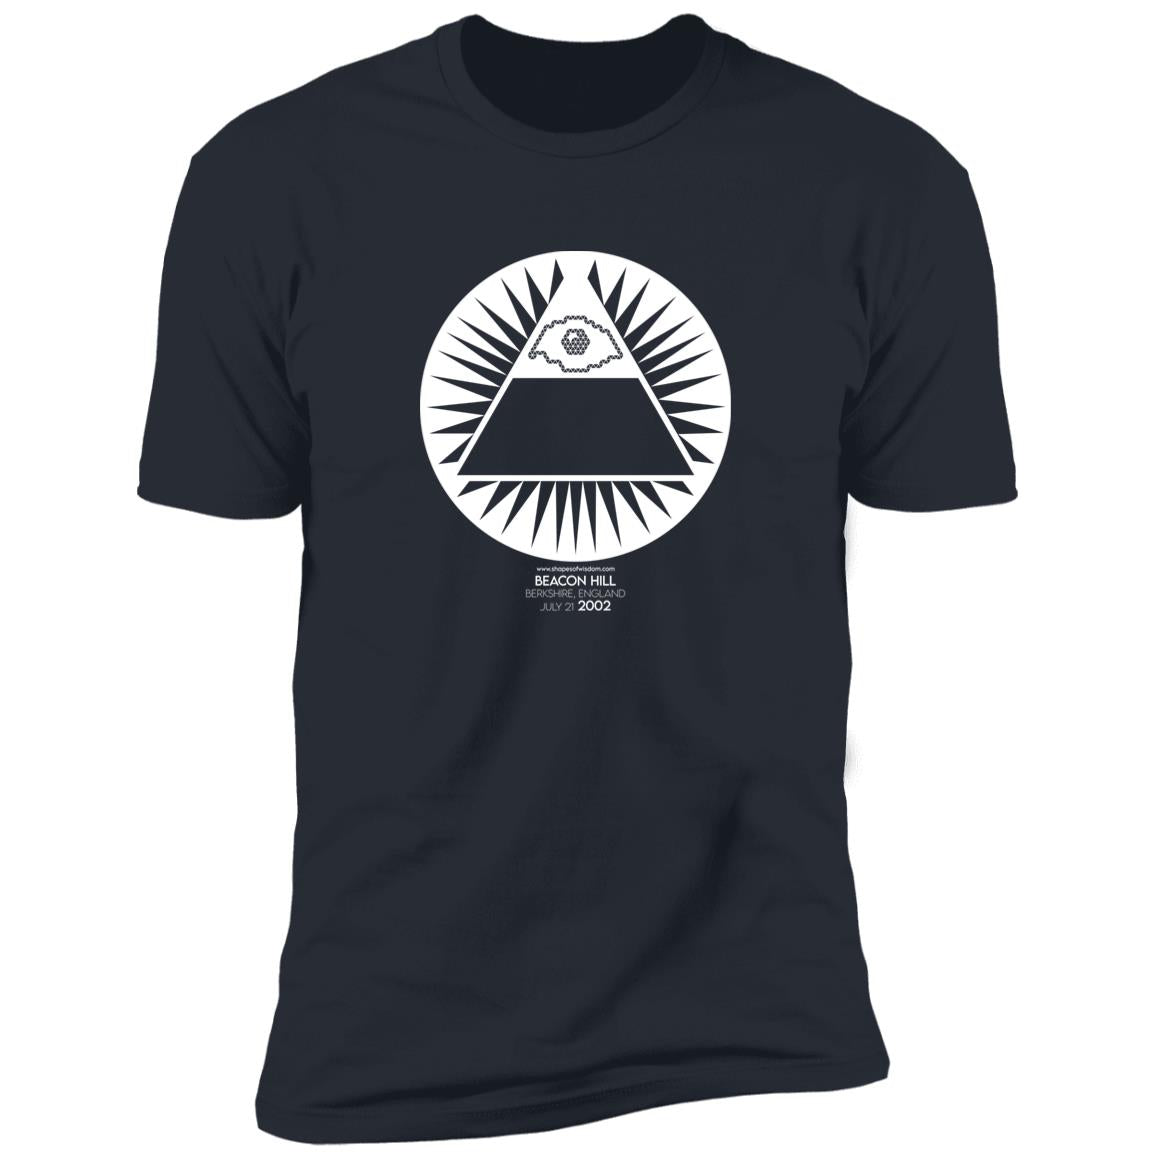 Crop Circle Premium T-Shirt - Beacon Hill